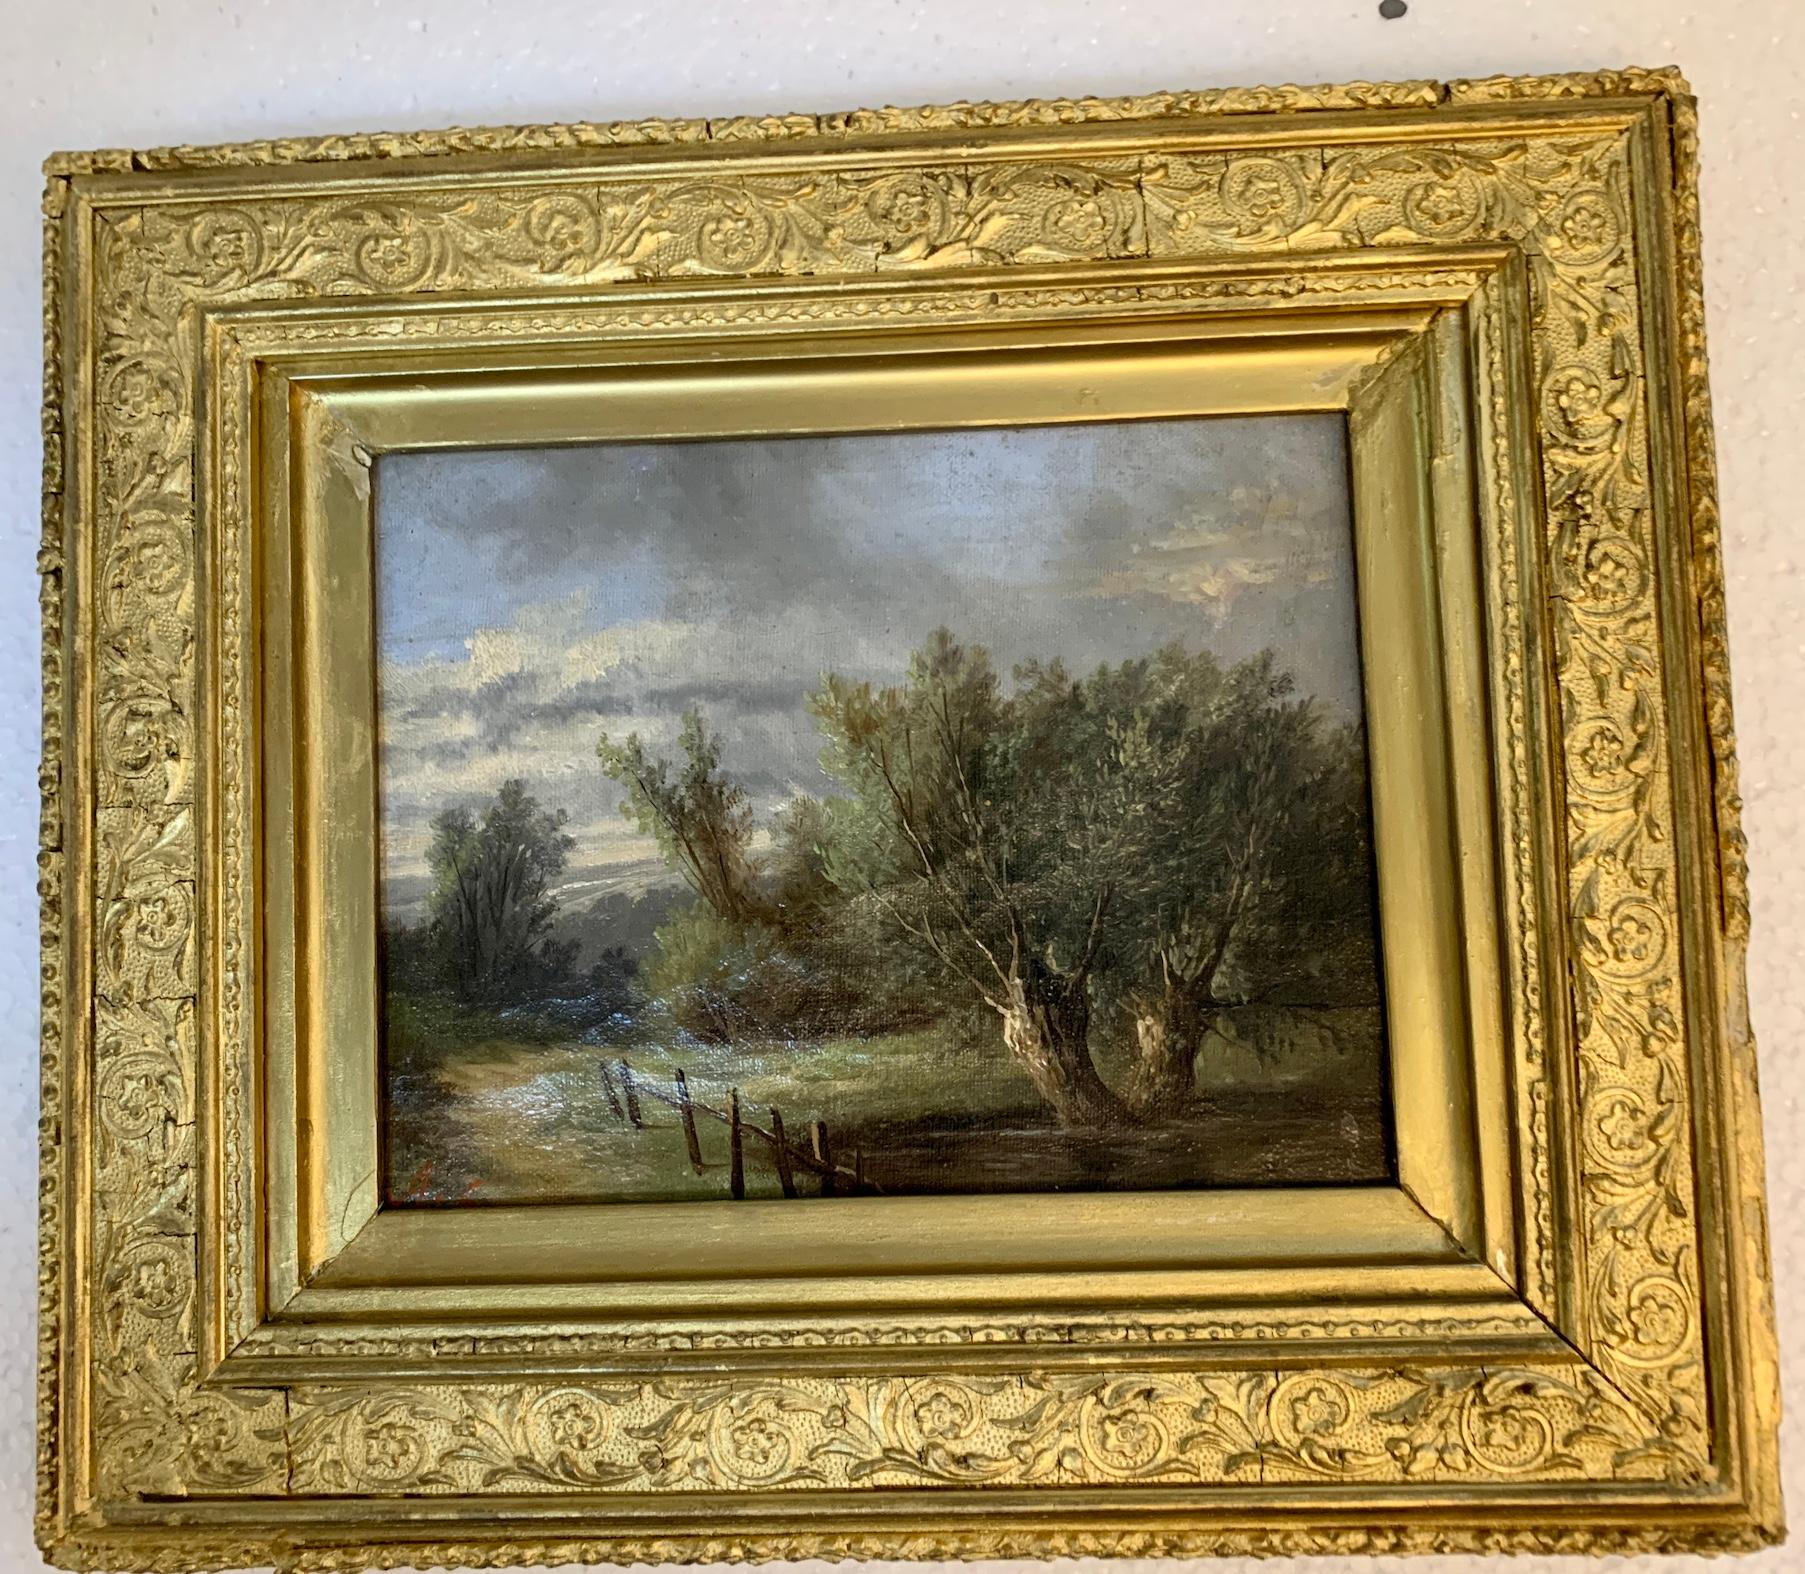 Englische Landschaft des 19. Jahrhunderts mit Eichenholz- und Eichenholzbäumen auf einem Weg – Painting von Ada Stone